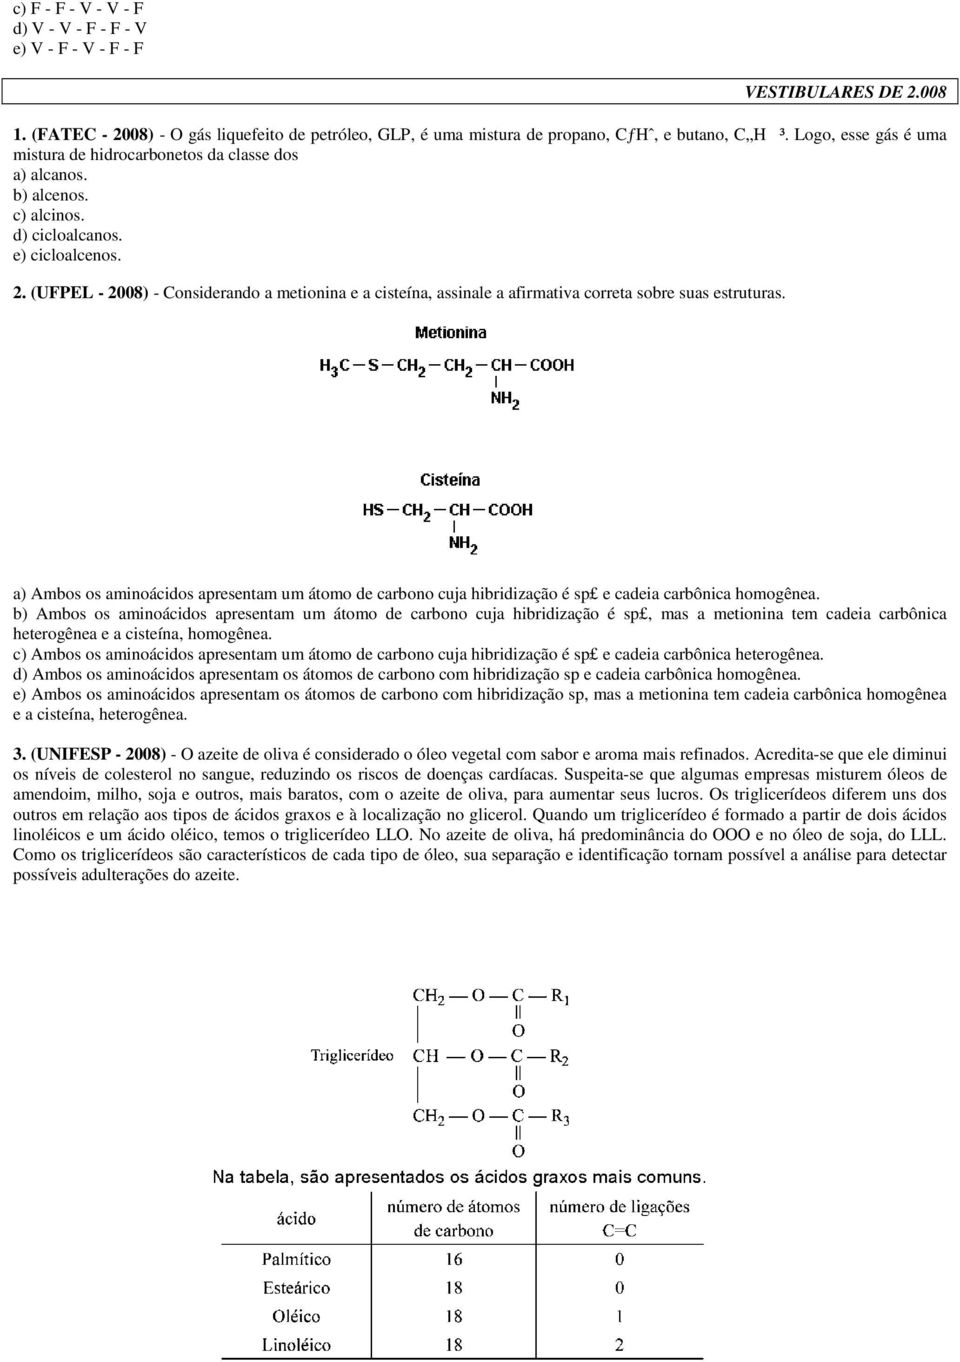 (UFPEL - 2008) - Considerando a metionina e a cisteína, assinale a afirmativa correta sobre suas estruturas.